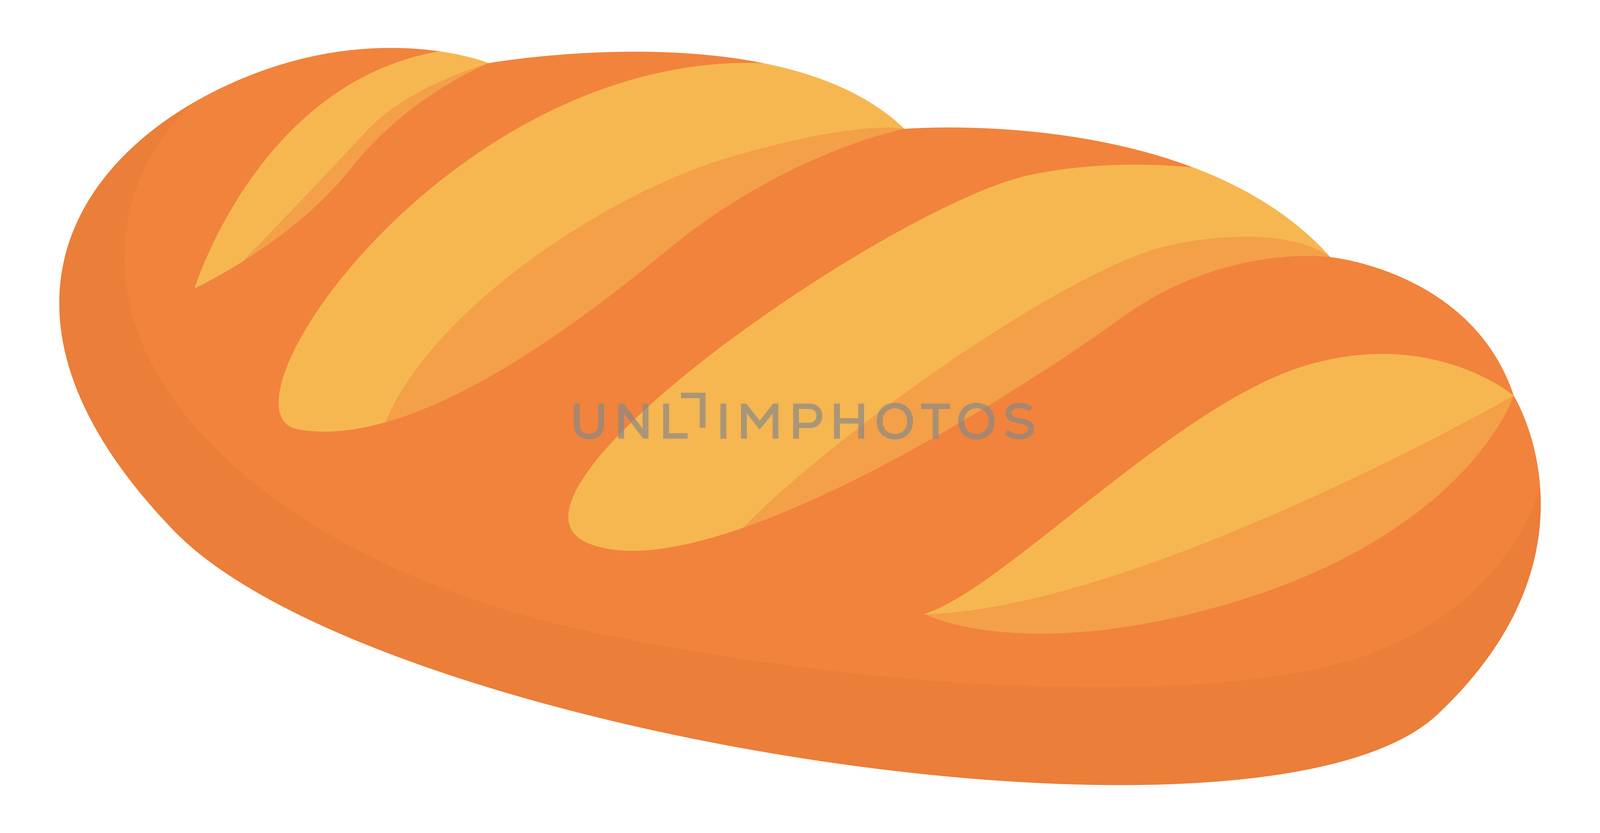 Fresh bread, illustration, vector on white background by Morphart